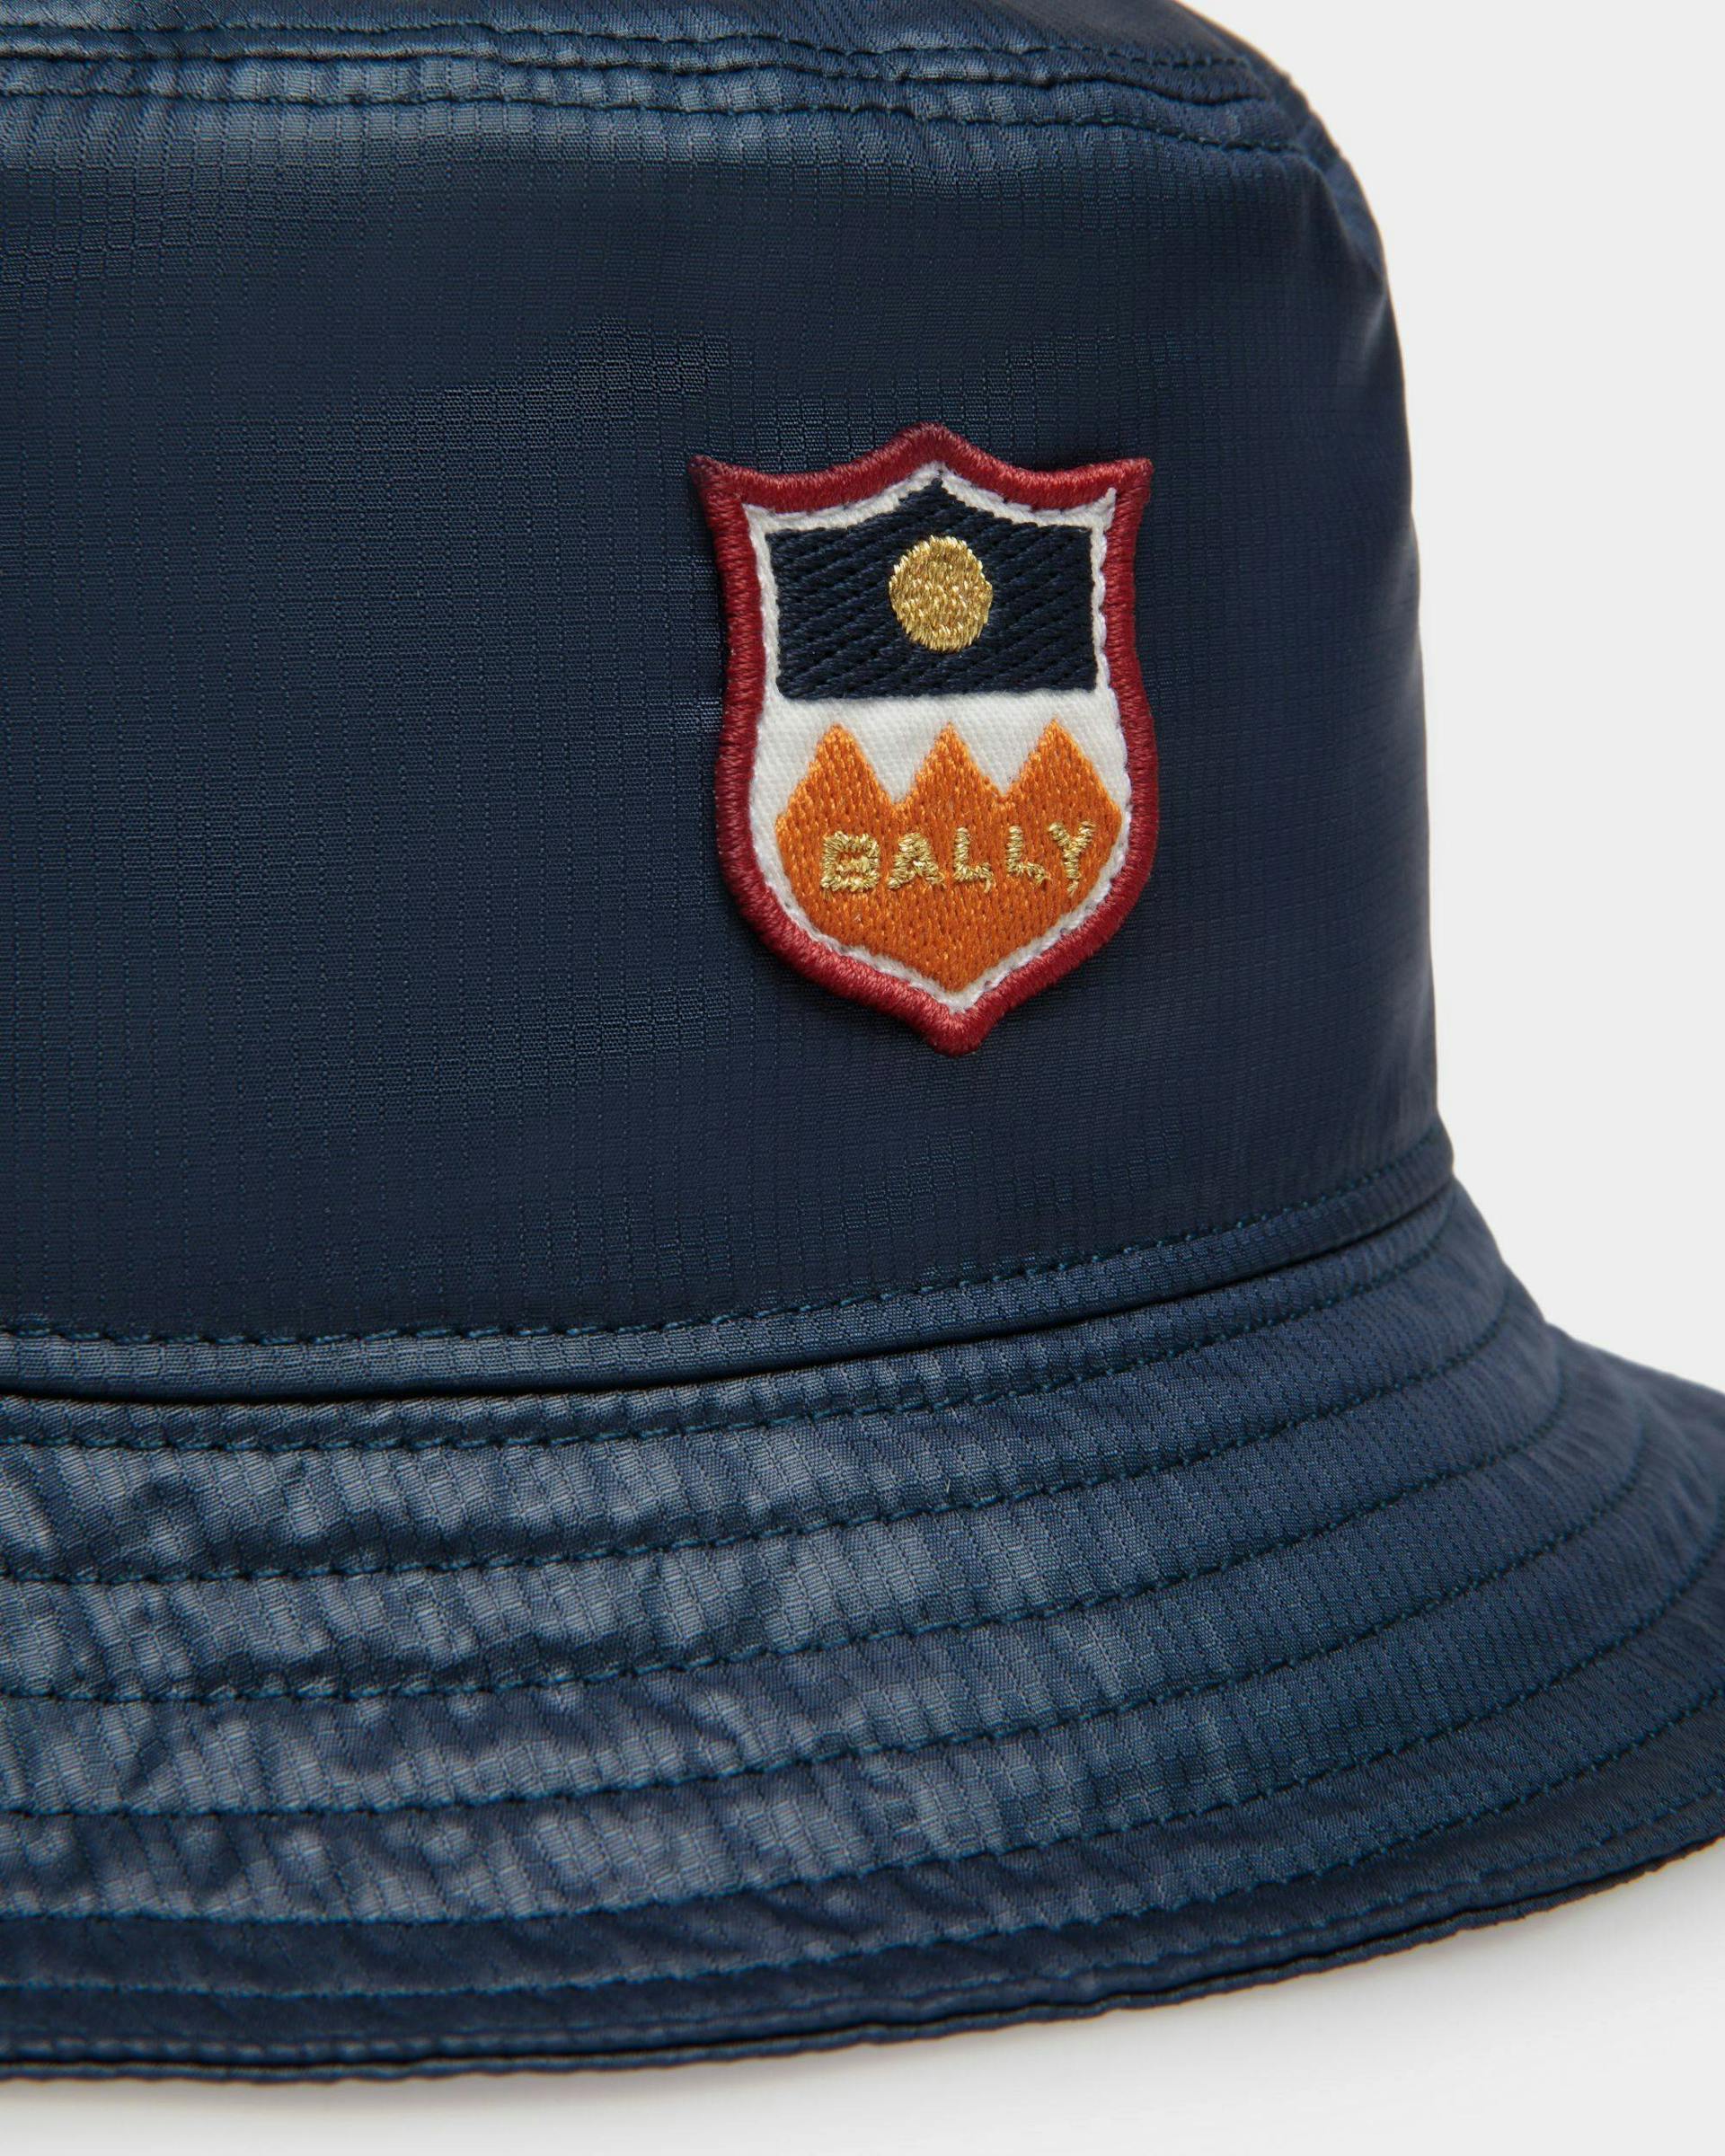 Men's Men's Bucket Hat in Navy Blue Technical Fabric | Bally | Still Life Detail